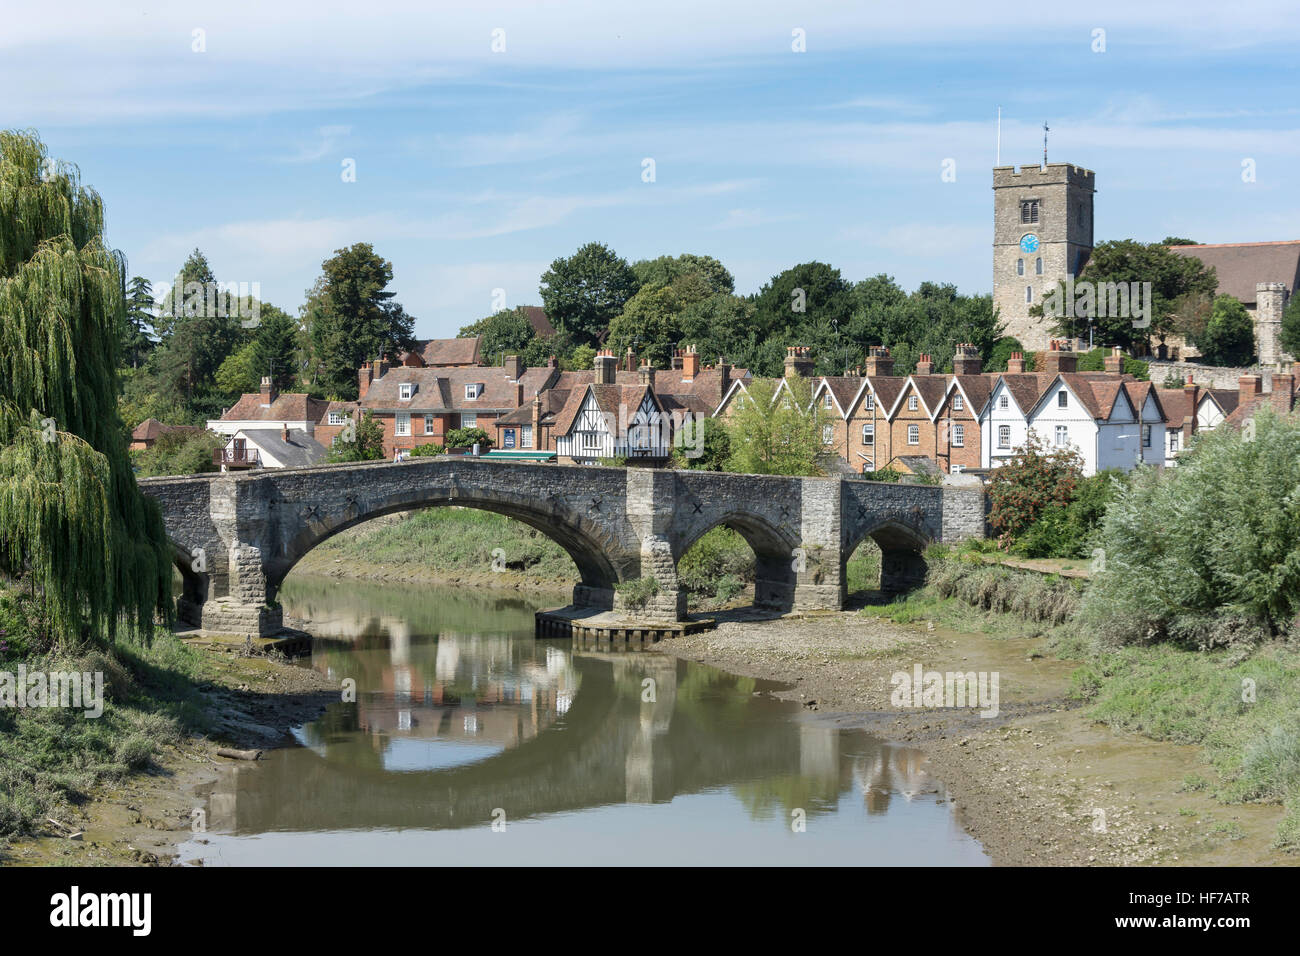 Village vue sur rivière Medway, Aylesford, Kent, Angleterre, Royaume-Uni Banque D'Images